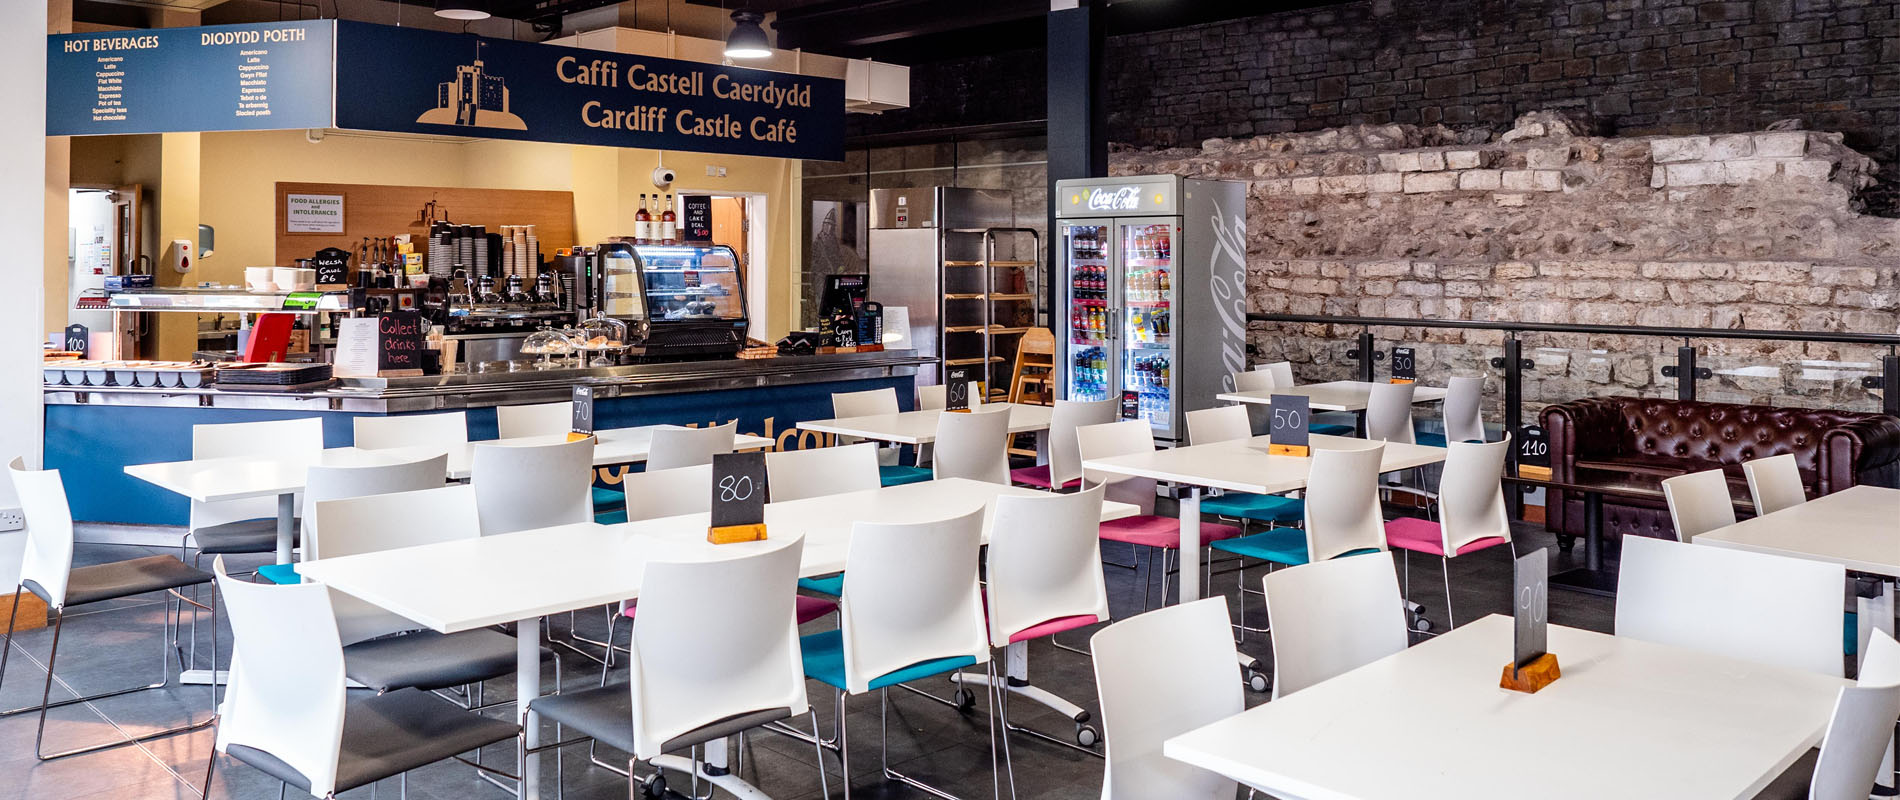 Cardiff Castle Cafe & Bar